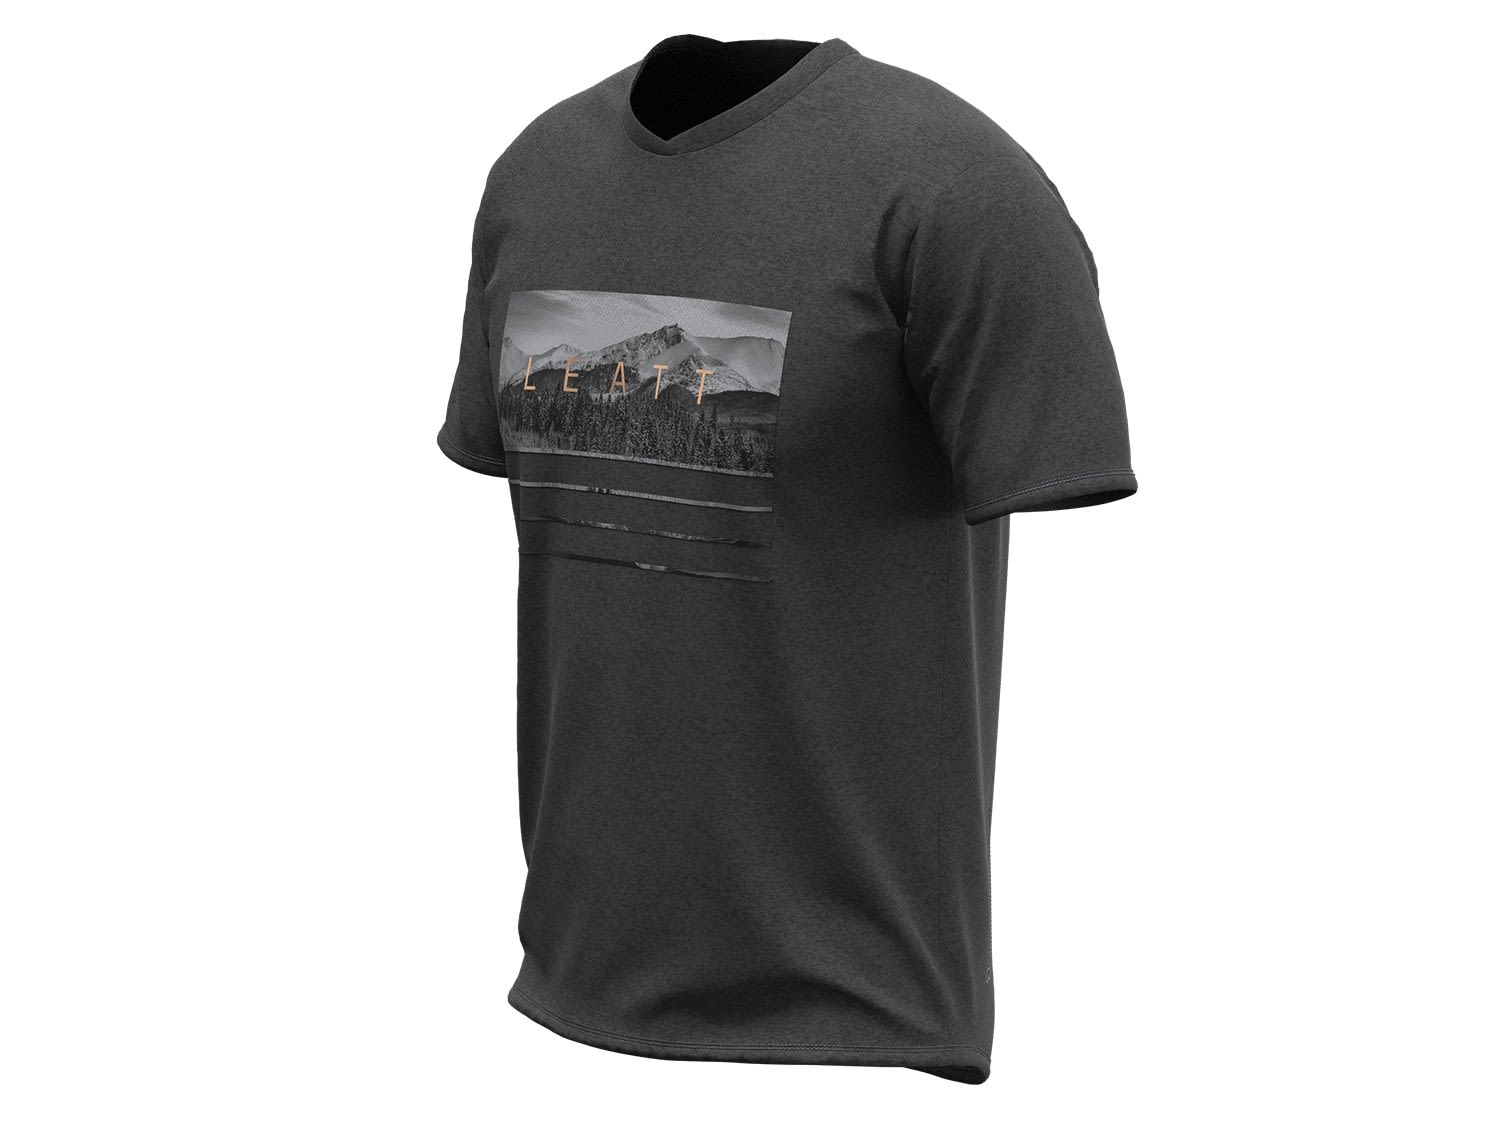 Leatt MTB All Mountain 2-0 Jersey Schwarz- Male Kurzarm-Shirts- Grsse S - Farbe Black unter Leatt